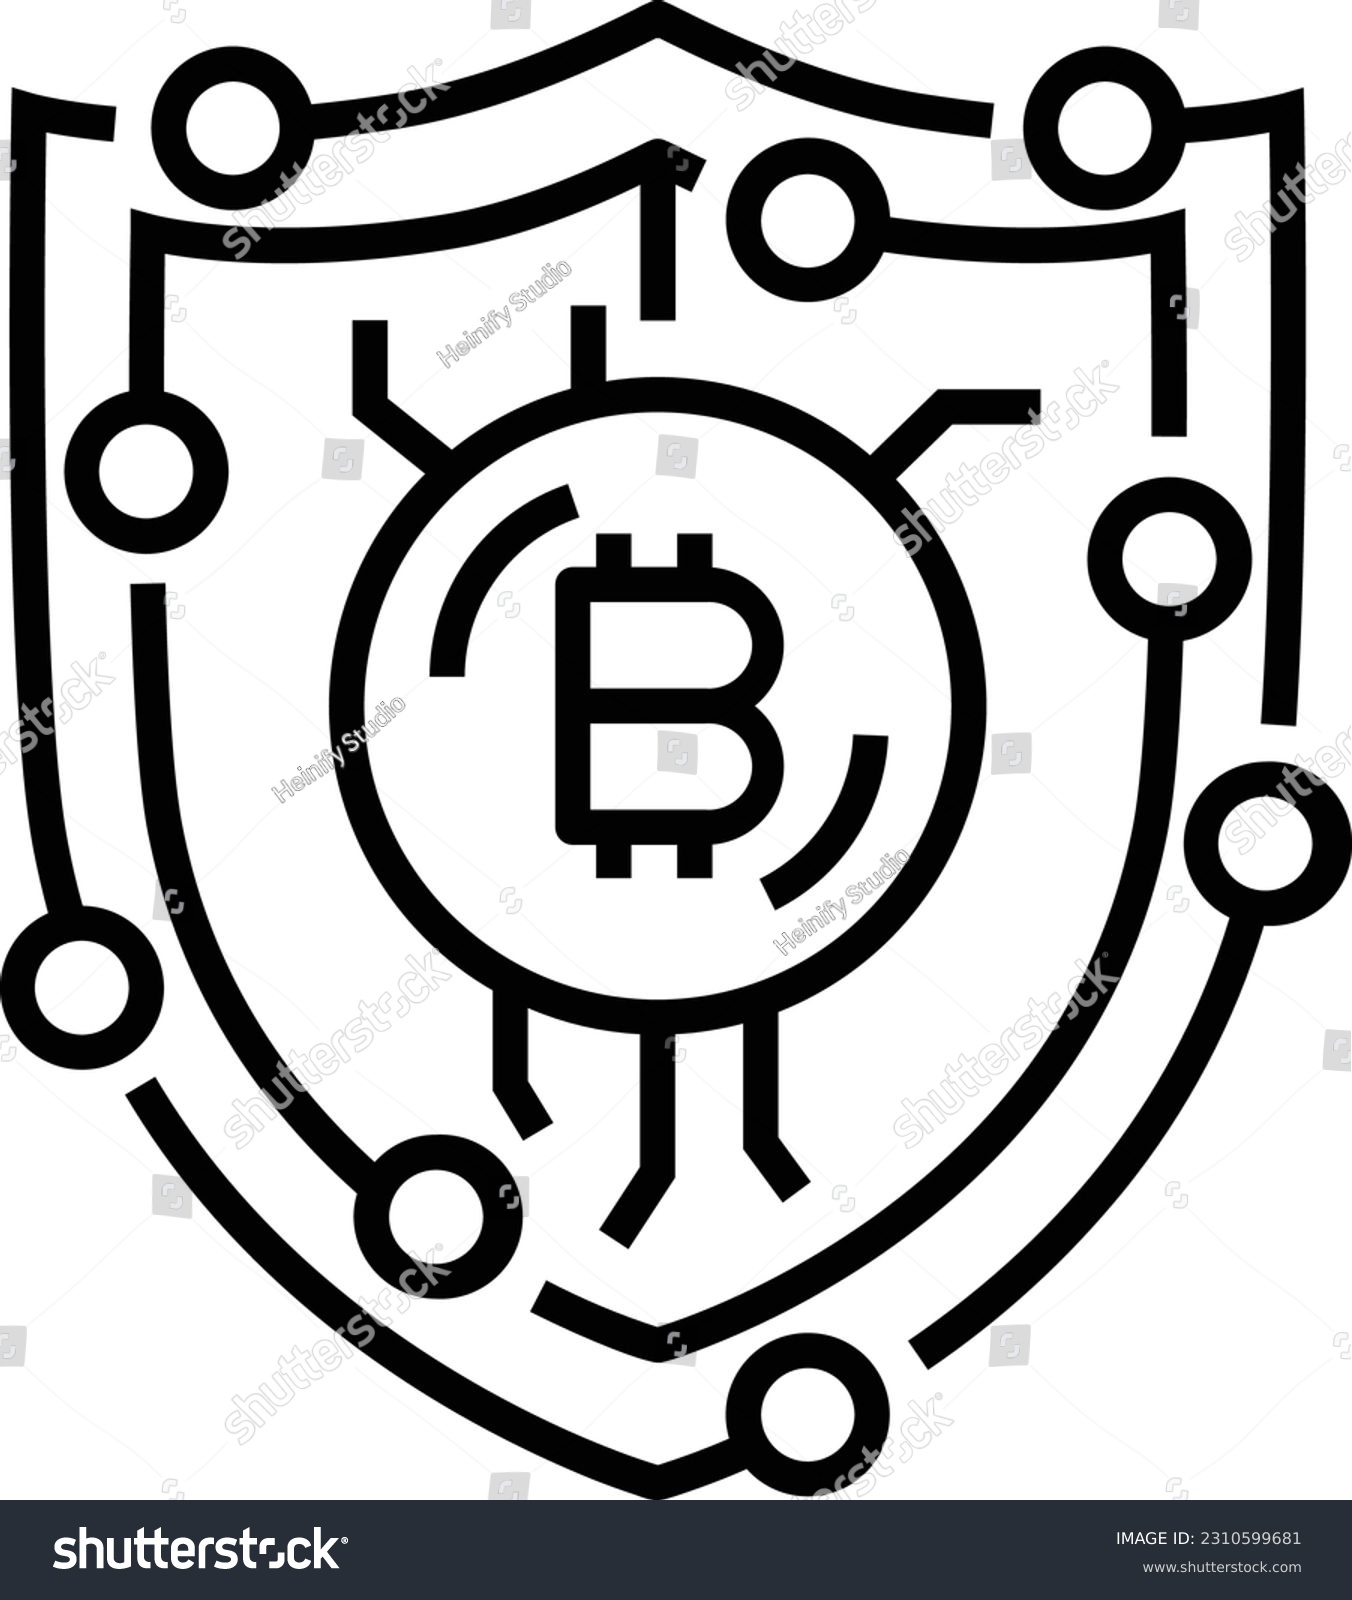 SVG of Bitcoin SVG Vector, Bitcoin vector for CNC, Laser, Cutter, Printer, BTC, Crypto Coin Vector template, Bitcoin EPS svg